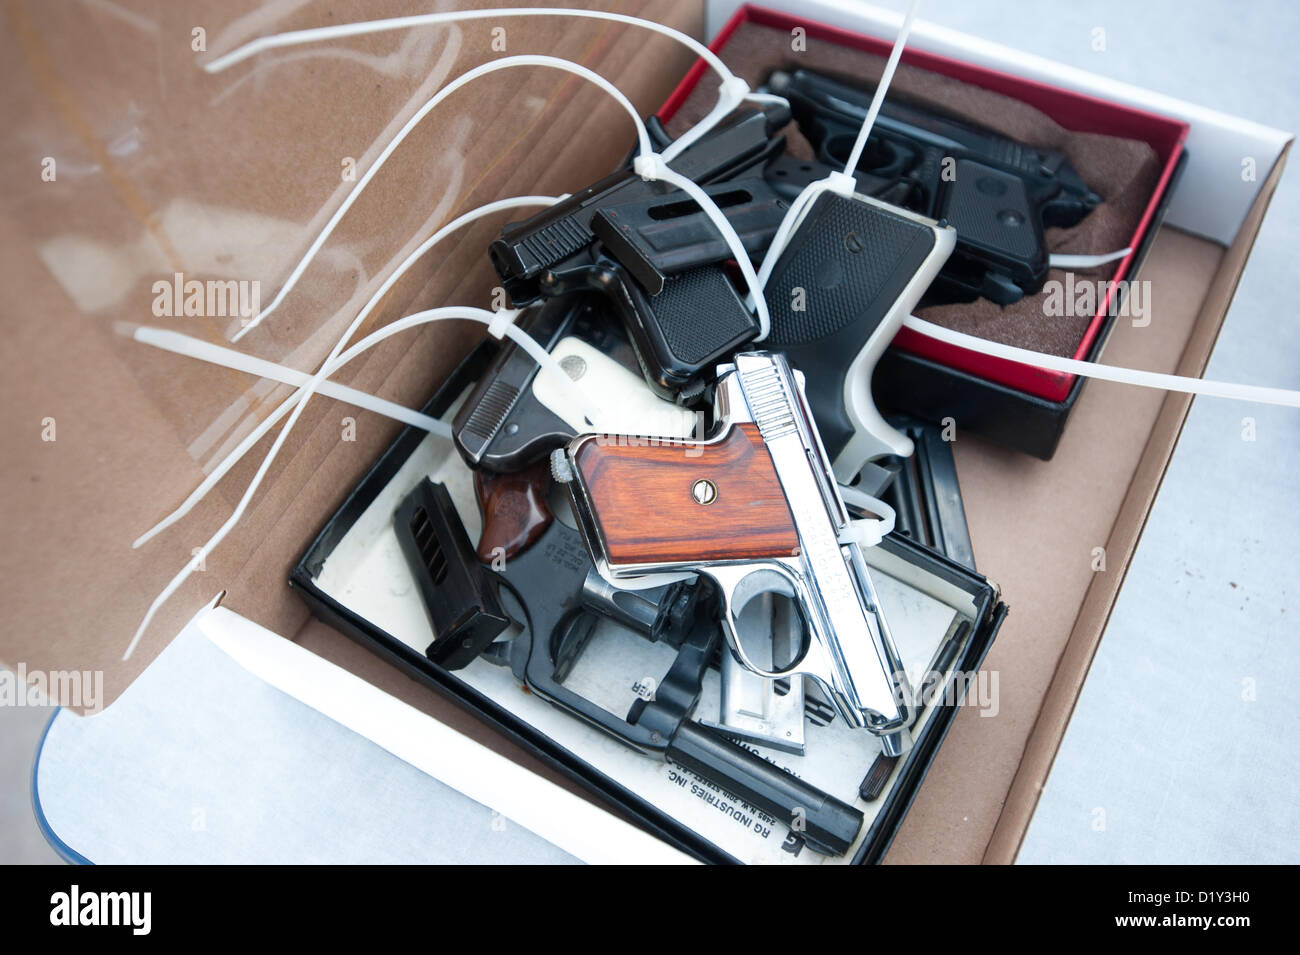 8 janvier 2013 - Tucson, Arizona, États-Unis - une boîte de pistolets récupérés par Tucson (Arizona) la police dans le cadre d'un rachat des armes à feu s'asseoir sur une table après avoir été traitée. Les gens se sont vu offrir une épicerie de 50 $ carte cadeau en échange de leurs armes. Environ 206 fusils ont été tourné dans selon la police. (Crédit Image : ©/ZUMAPRESS.com) s Seberger Banque D'Images